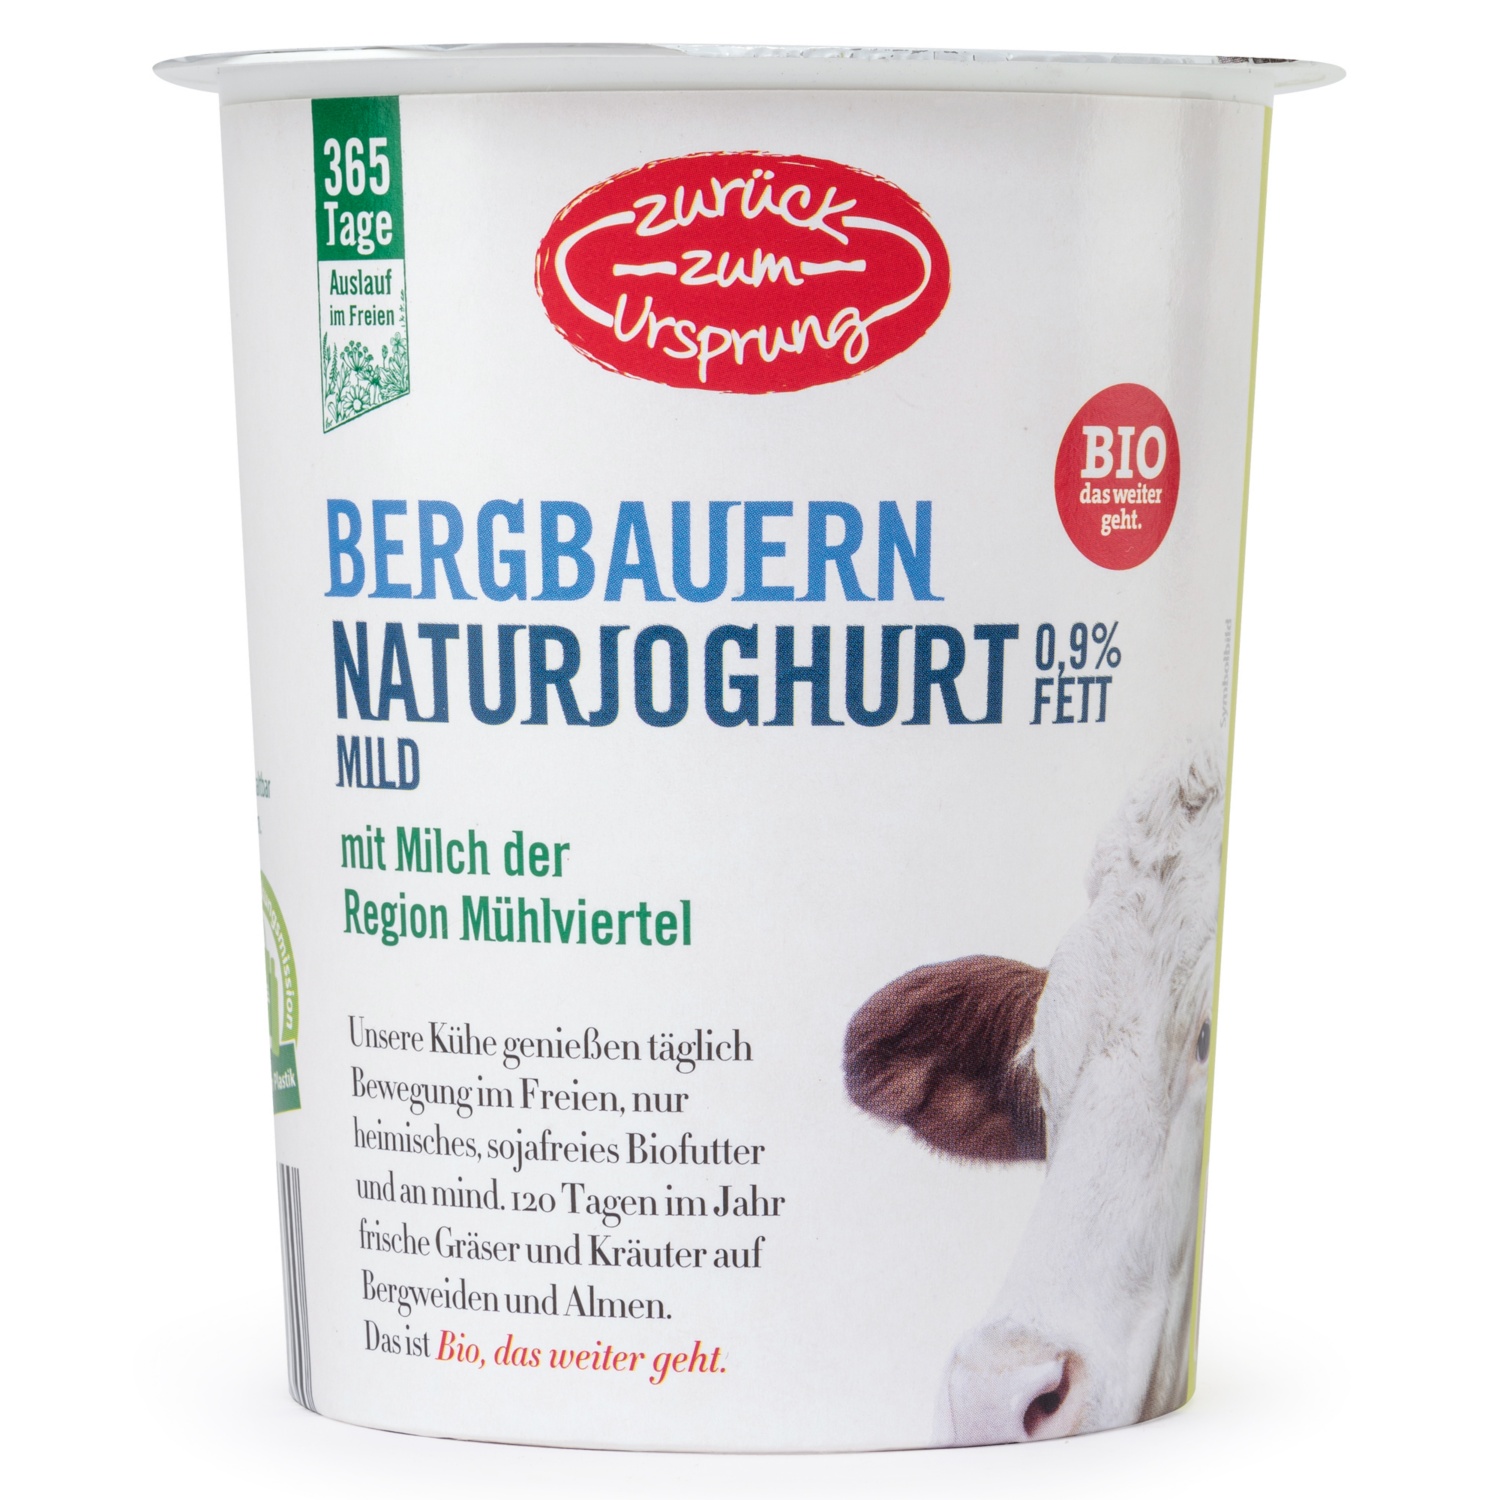 ZURÜCK ZUM URSPRUNG Österr. BIO-Bergbauern-Naturjoghurt, 0,9% Fett